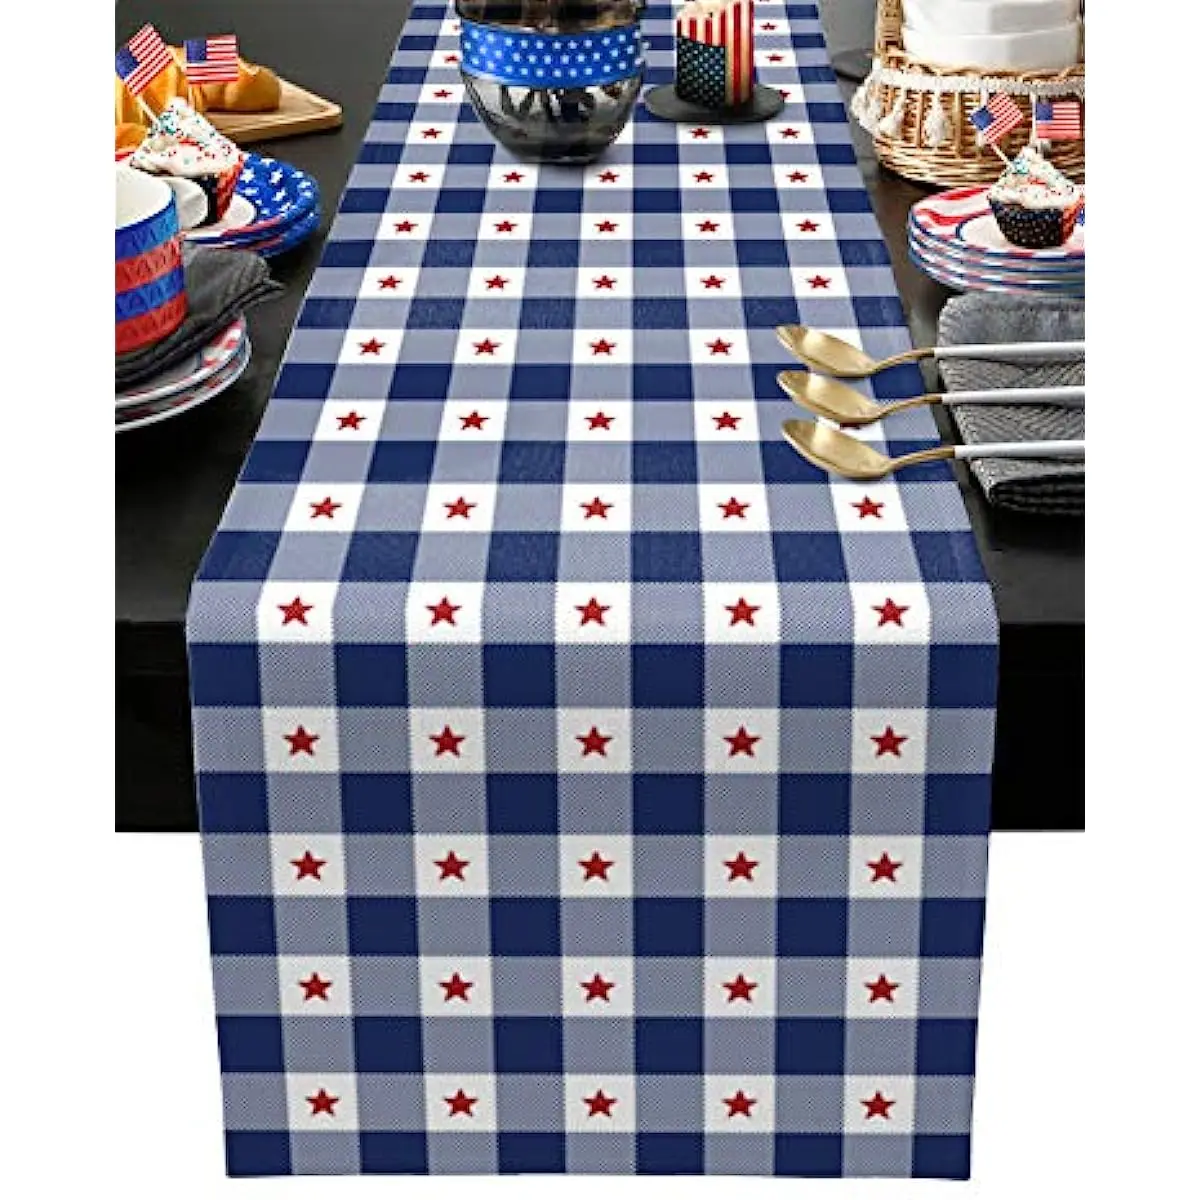 

Настольная скатерть в клетку, украшение для обеденного стола, патриотическая американская скатерть, сине-белая, День независимости 4 июля